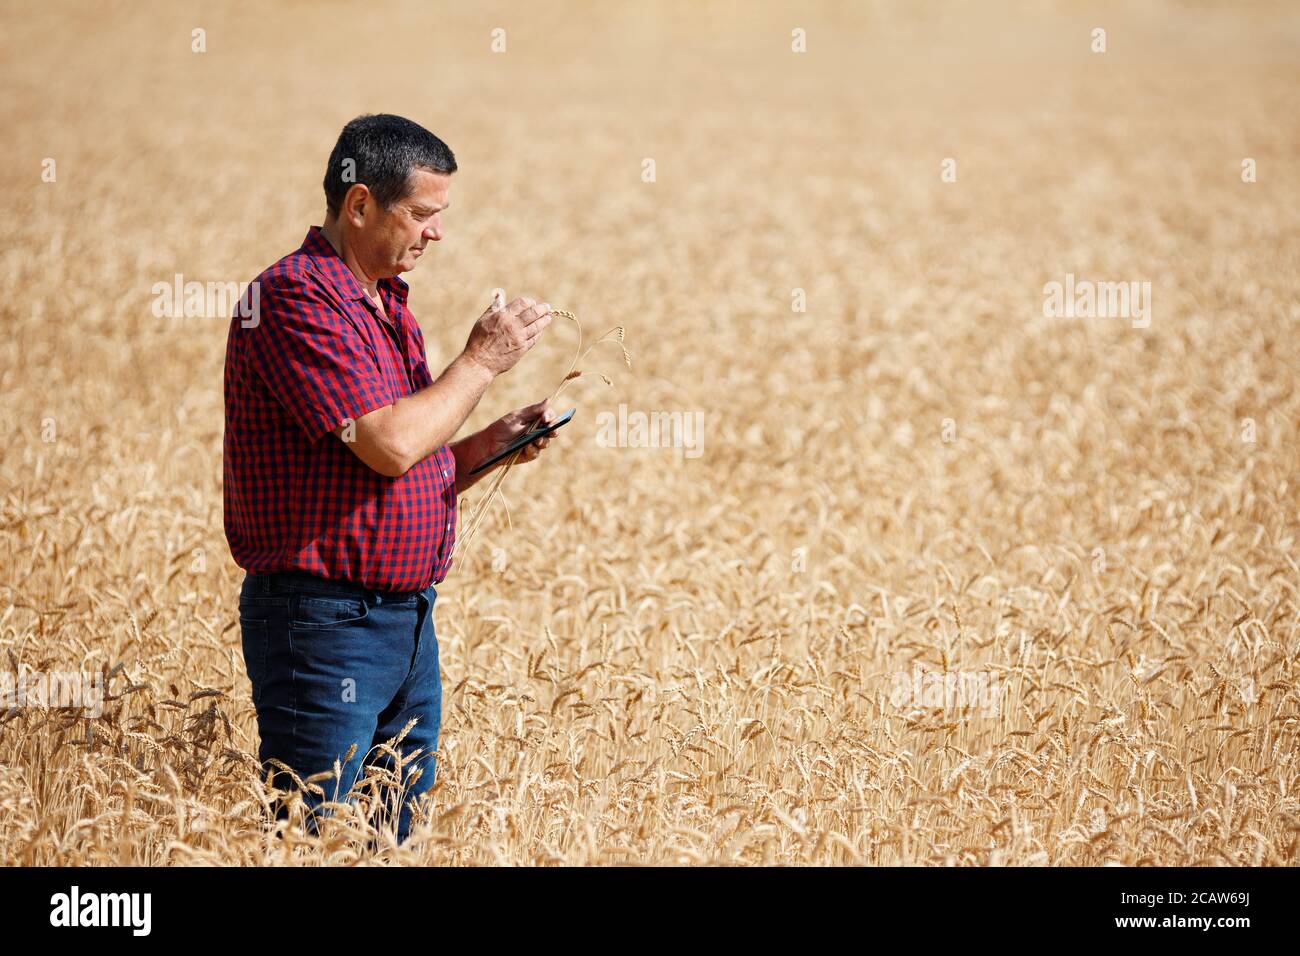 farmer in wheat field Stock Photo